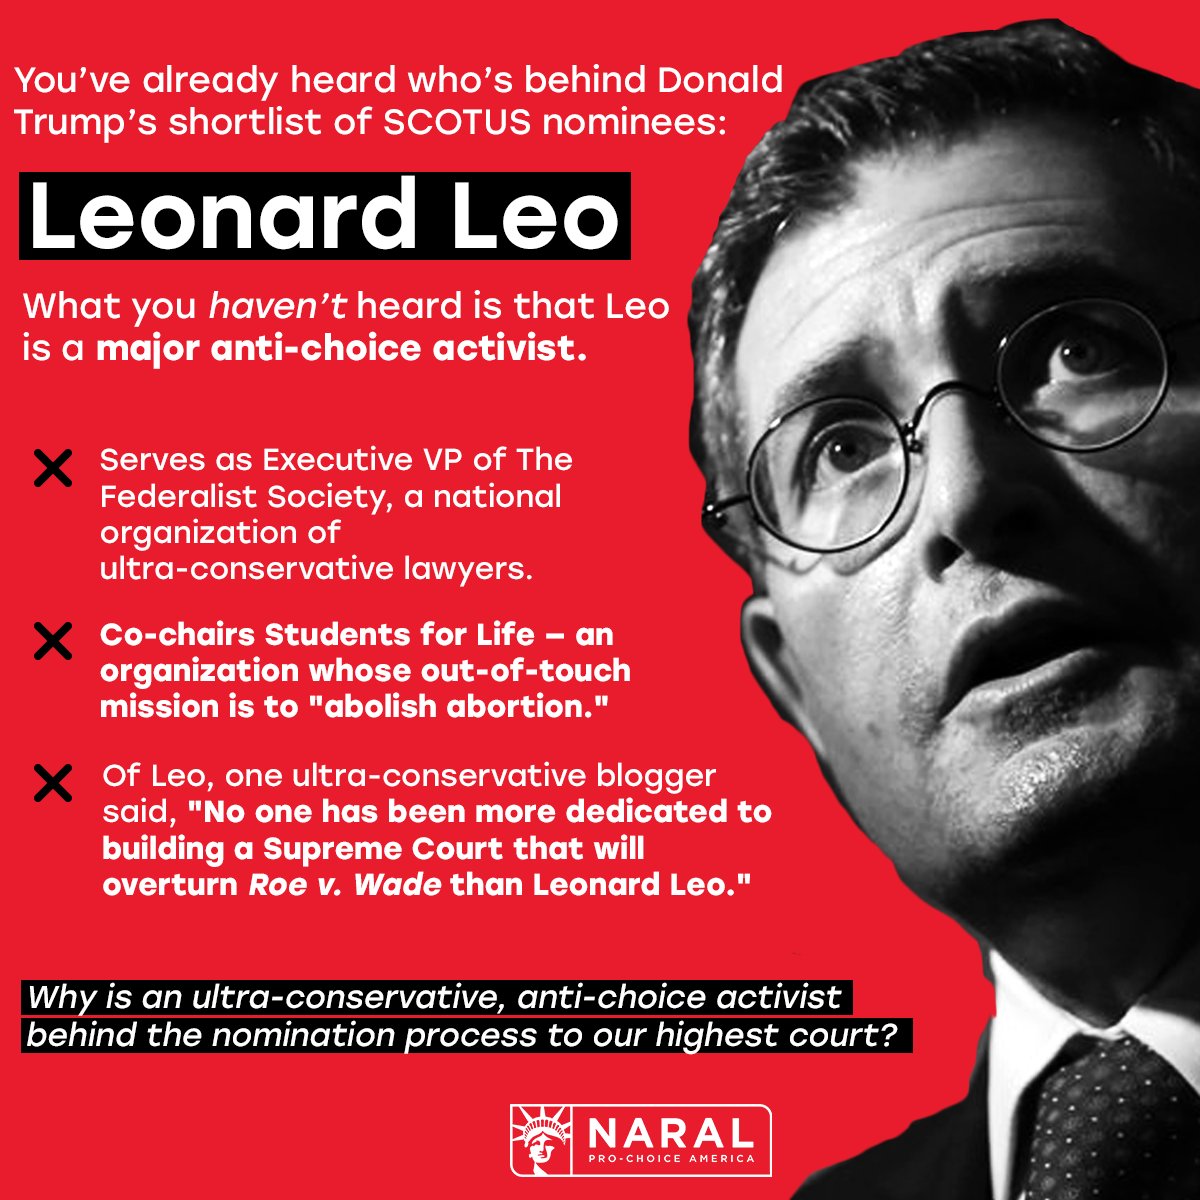 Leonard Leo: The man behind the GOP's SCOTUS supermajority